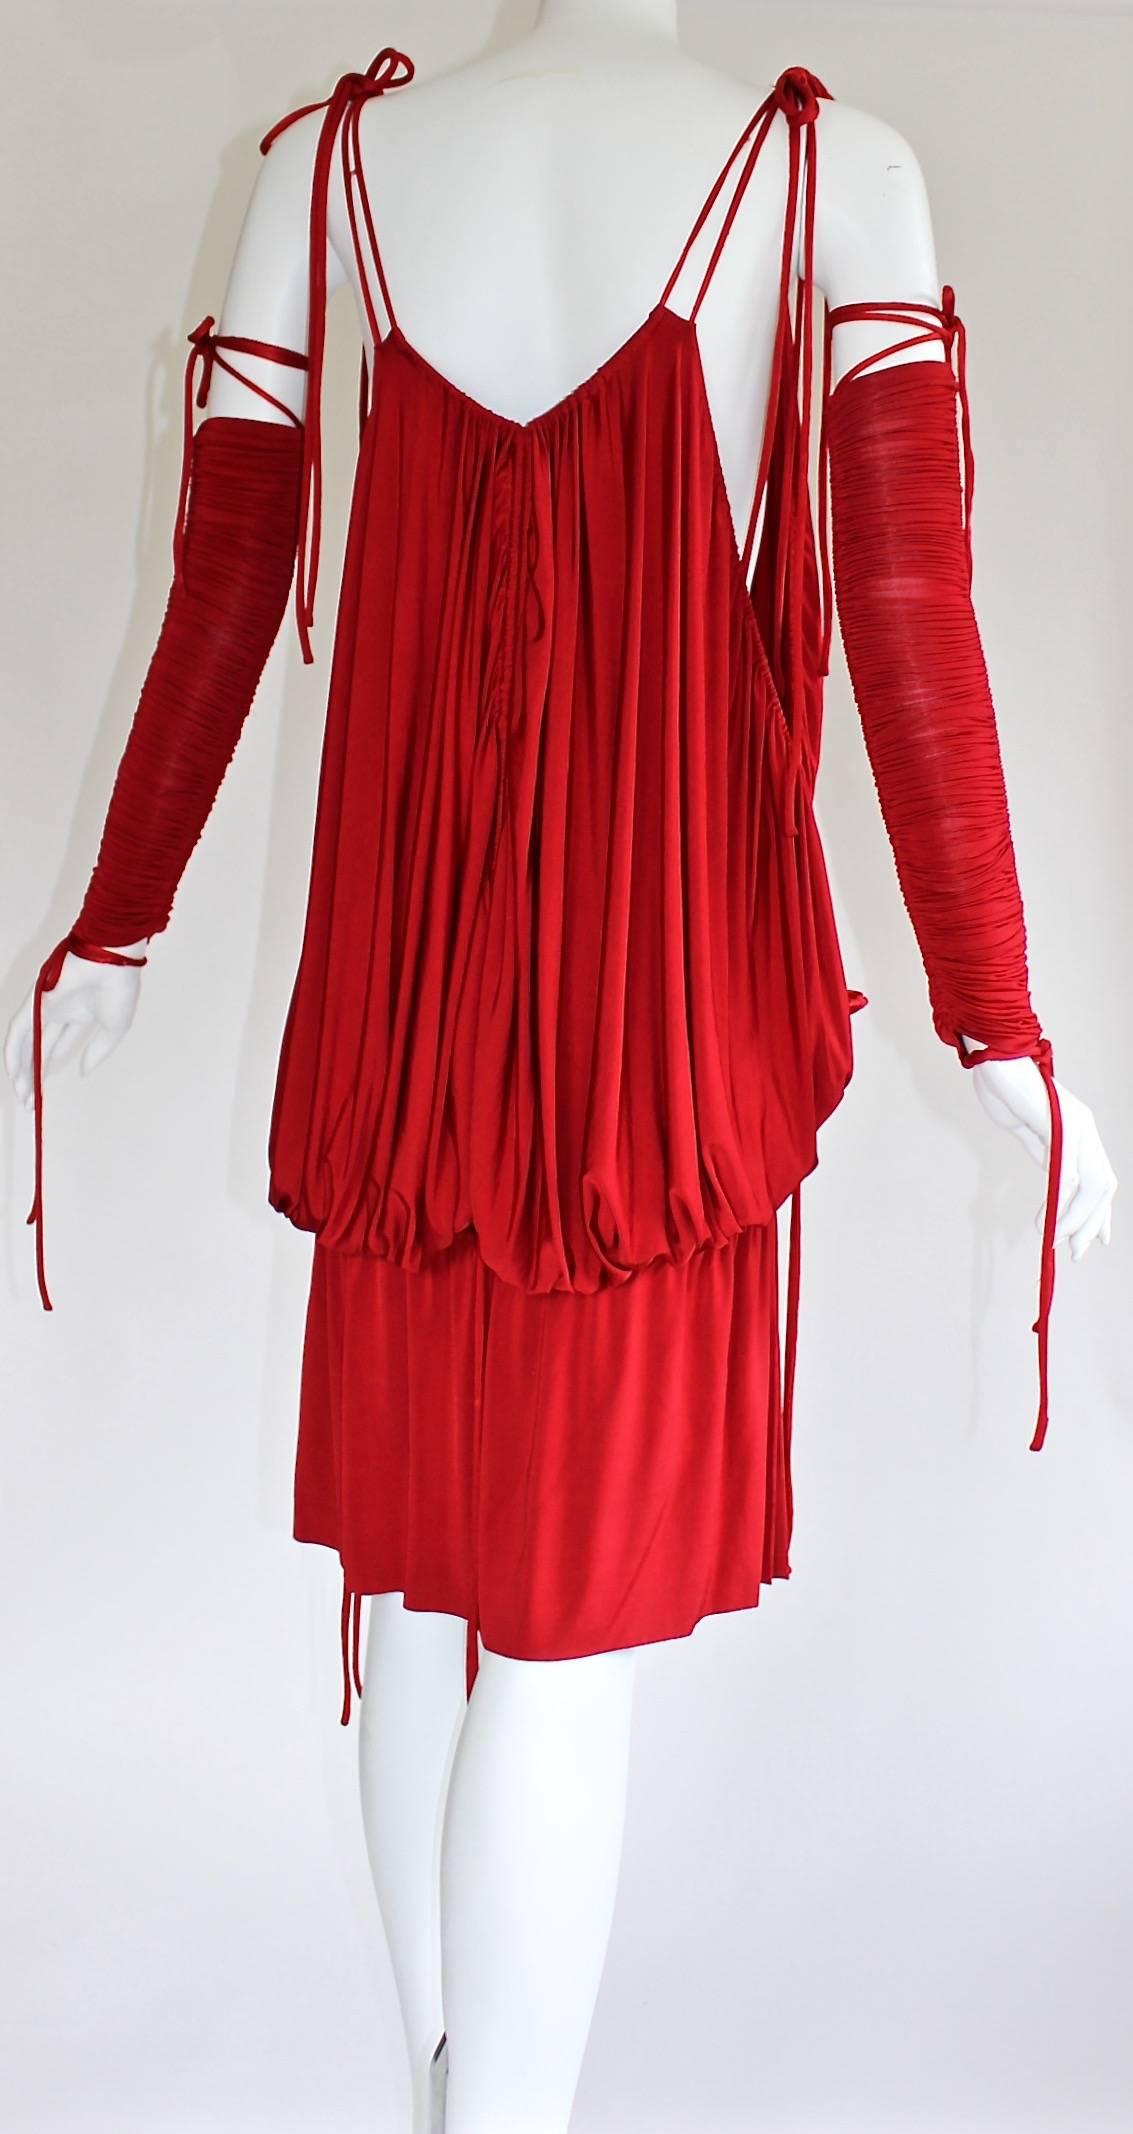  Campagne publicitaire Dolce & Gabbana Runway - Mini robe rouge froncée aux bras, 2003 Pour femmes en vente